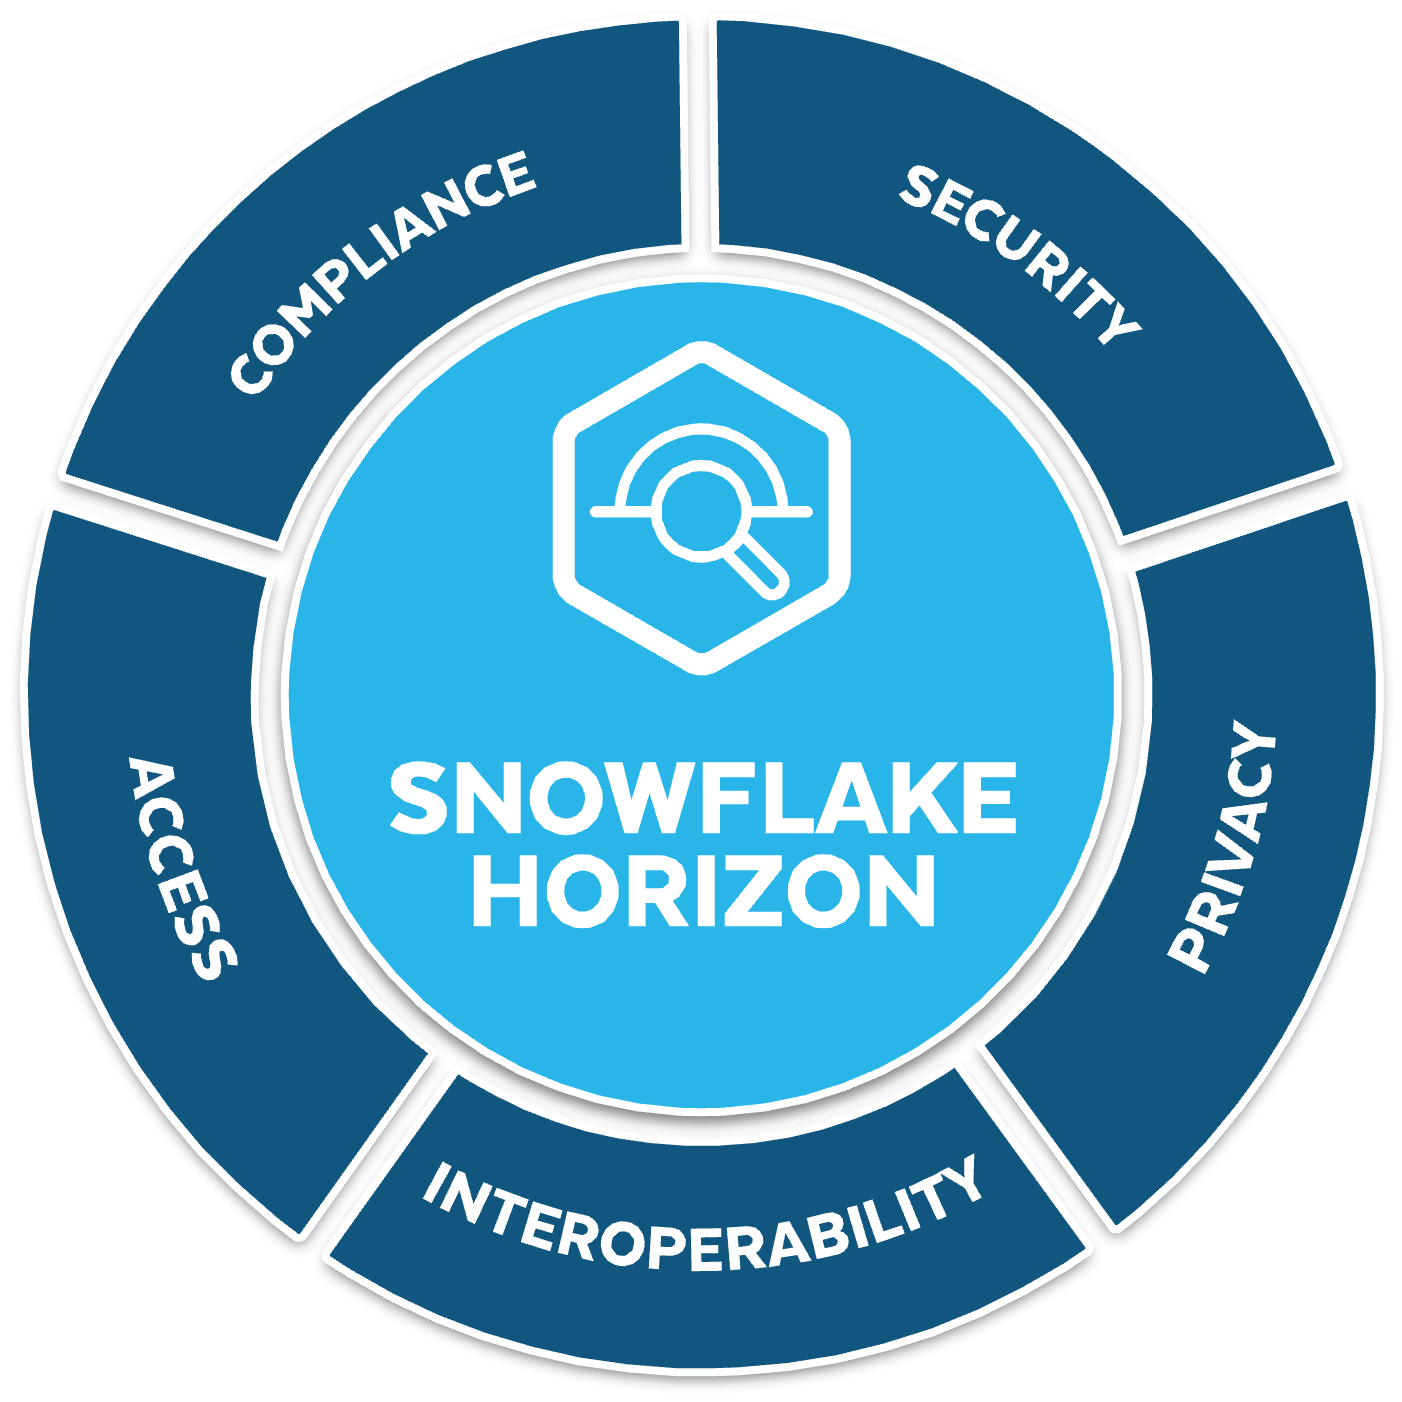 Snowflake Horizon diagram